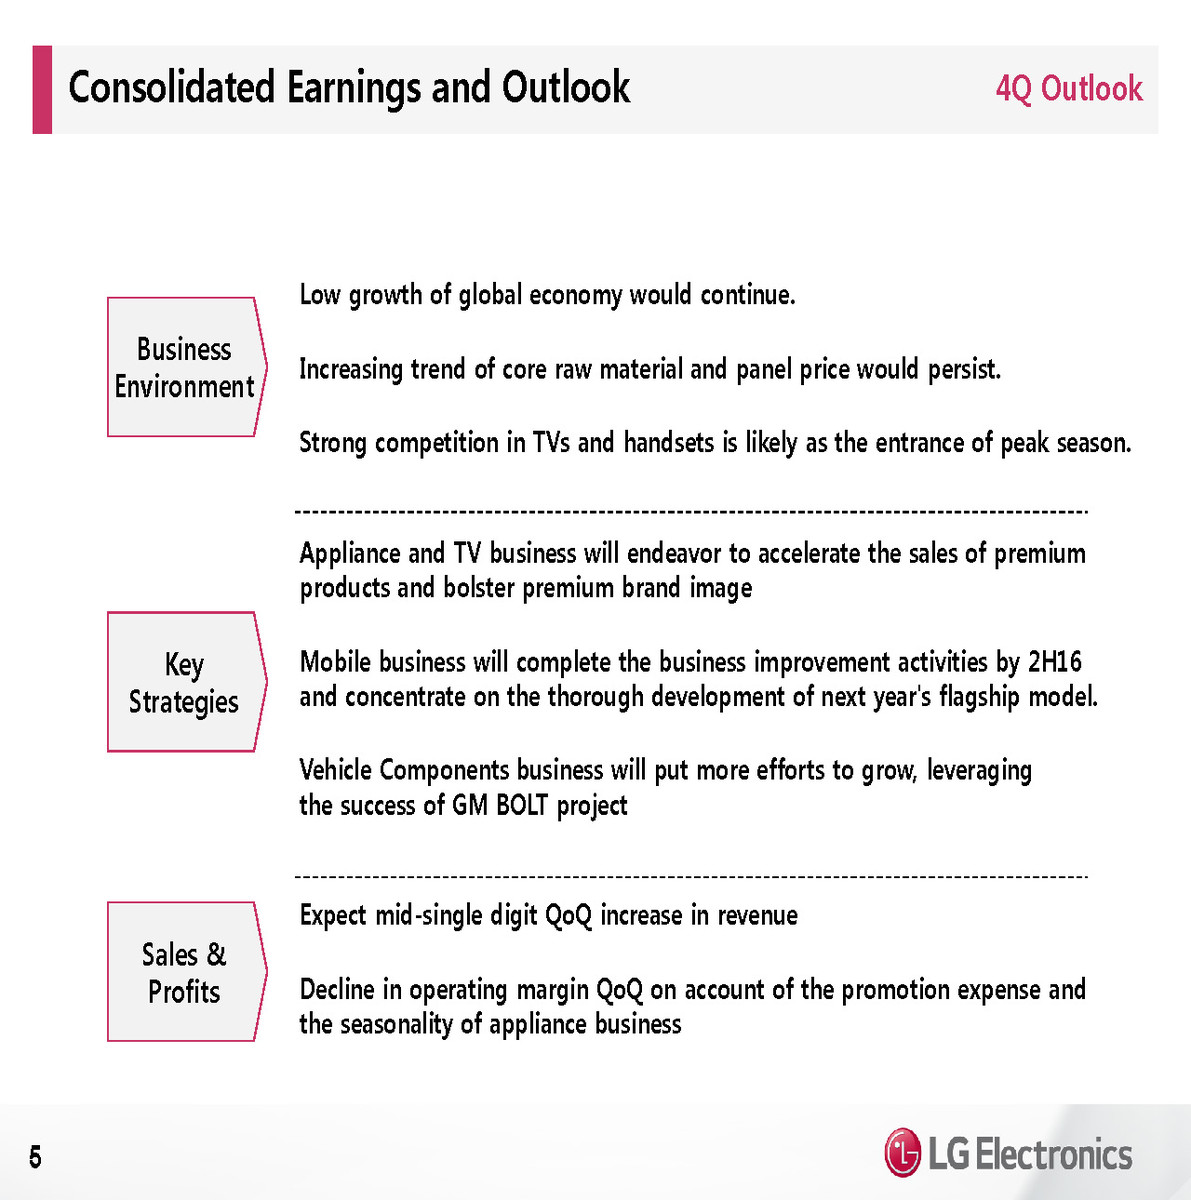 LG Electronics Q4 operating profit down 91.2% in Q4